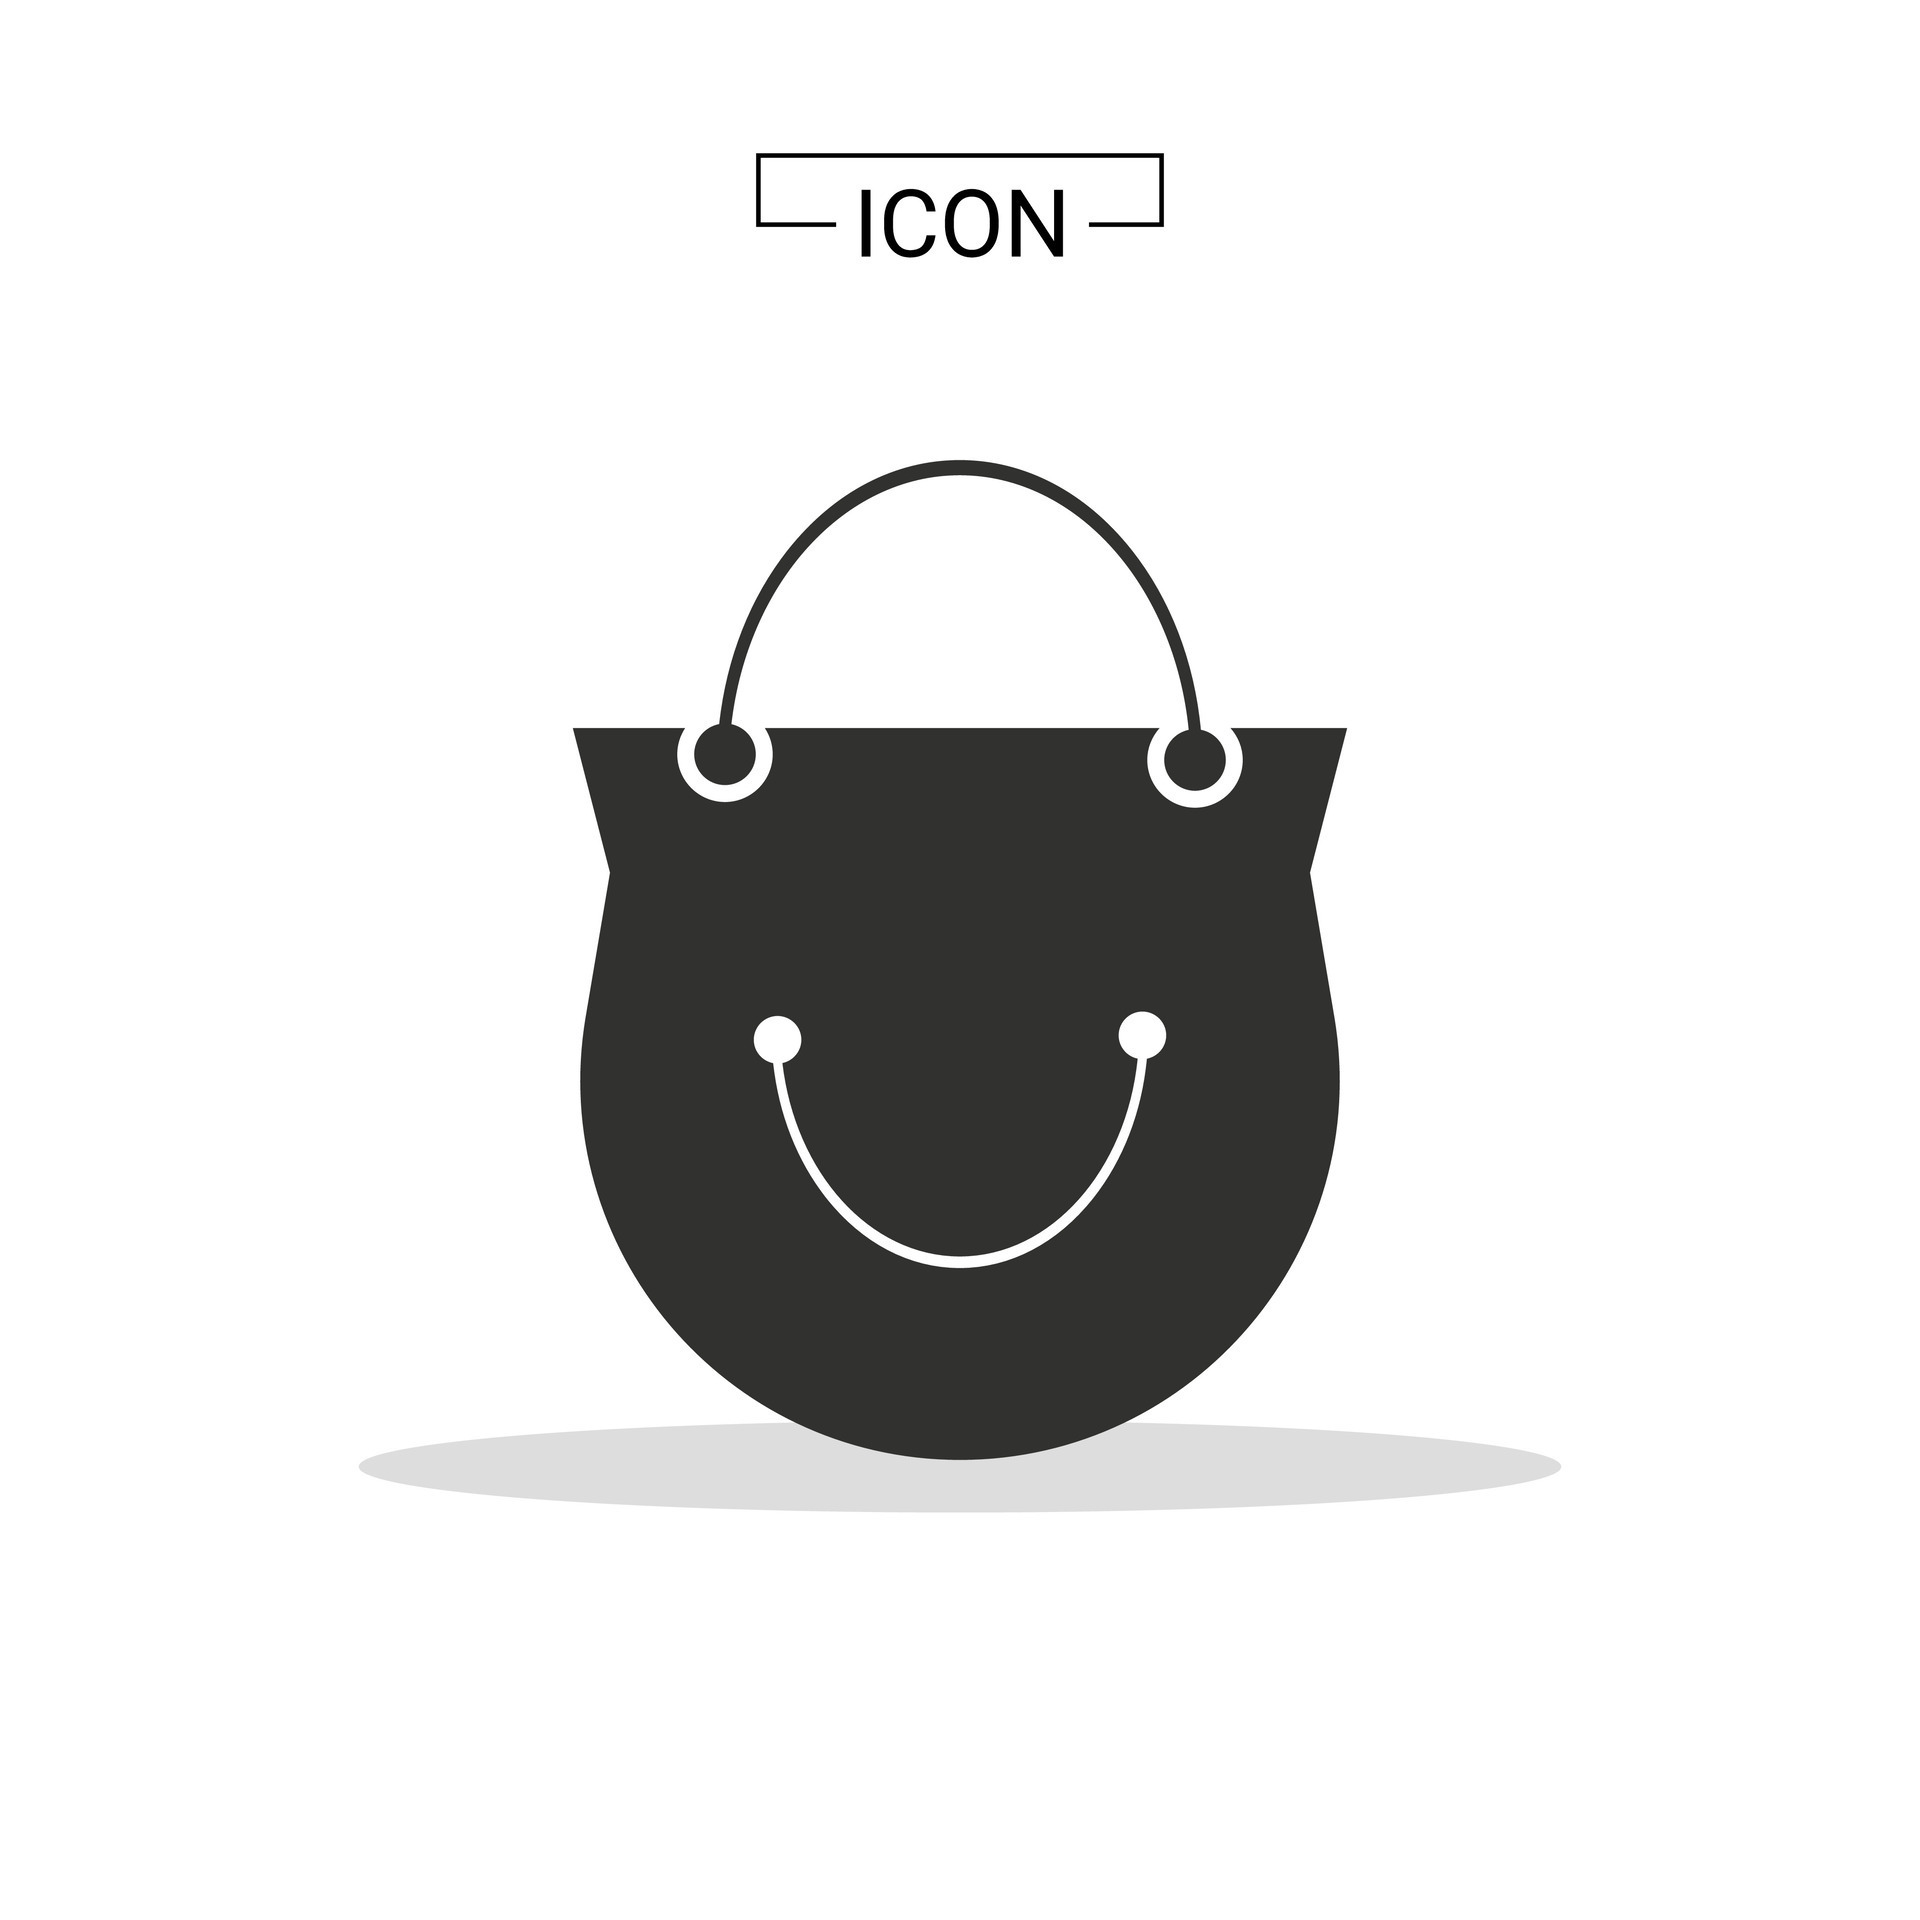 Shopping Bag icon symbol graphic recourse 28200542 Vector Art at Vecteezy